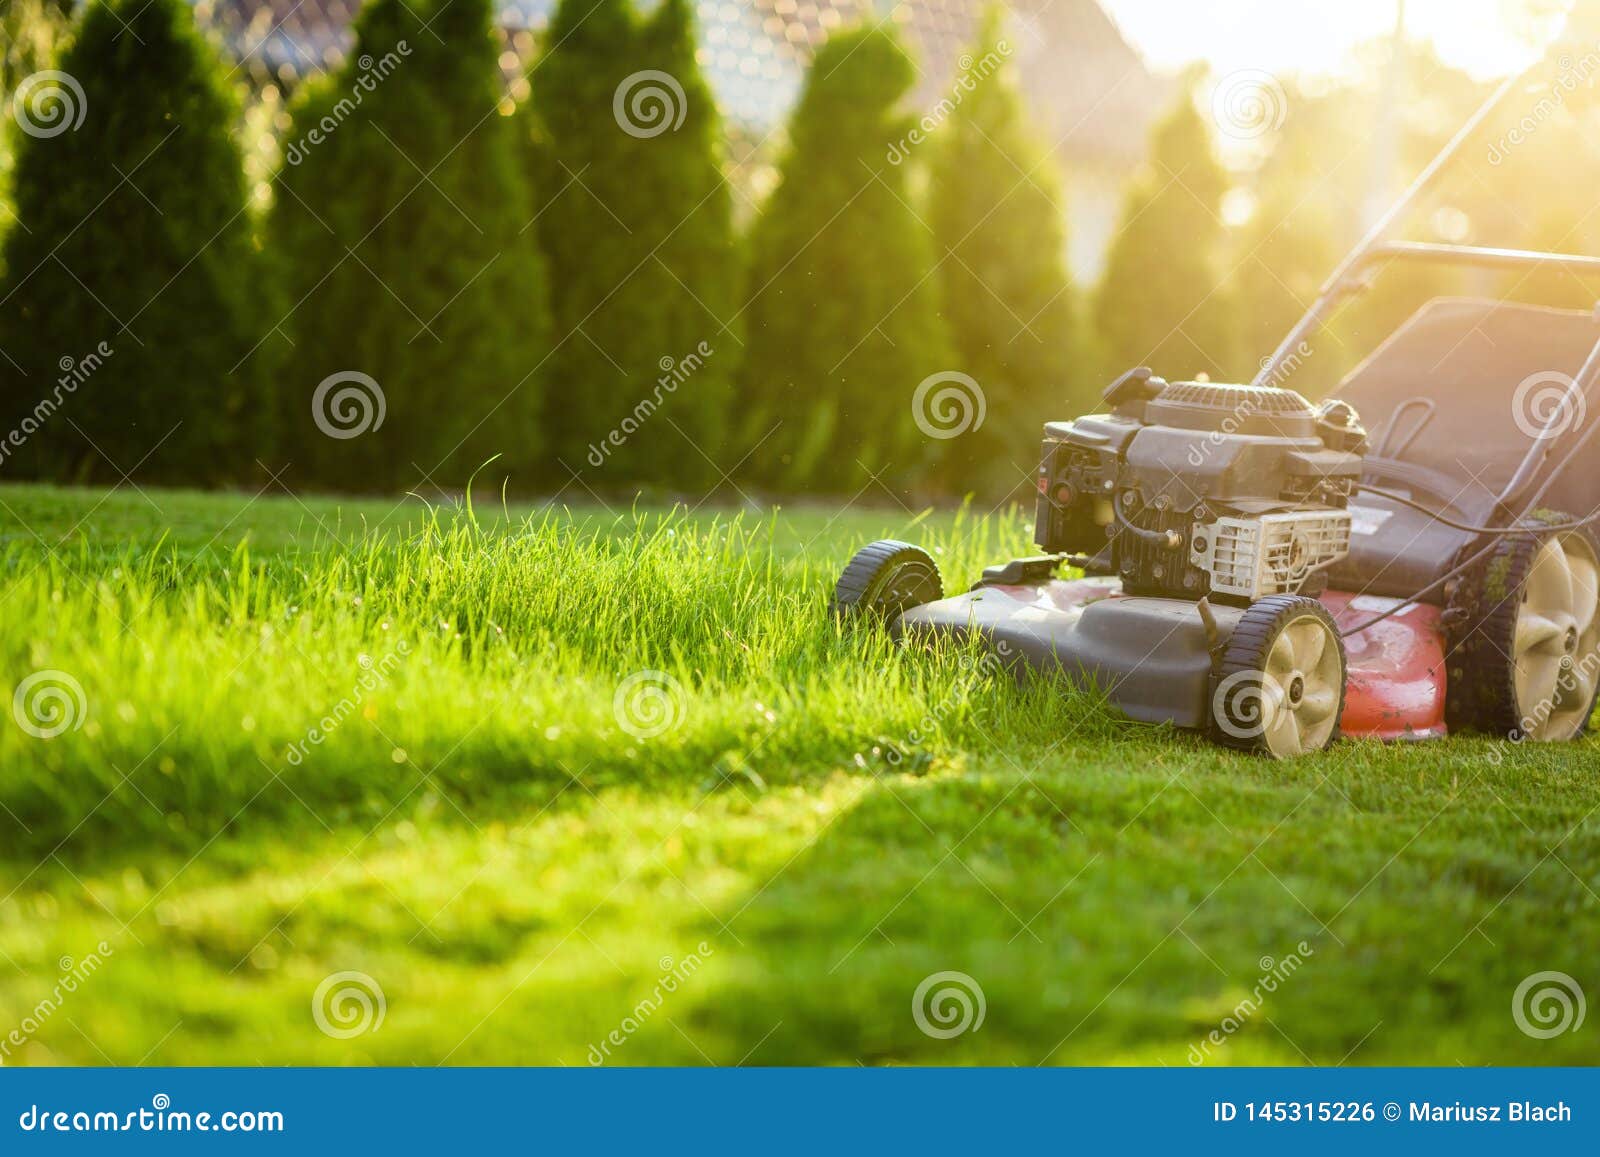 lawn mower cutting green grass in sunlight